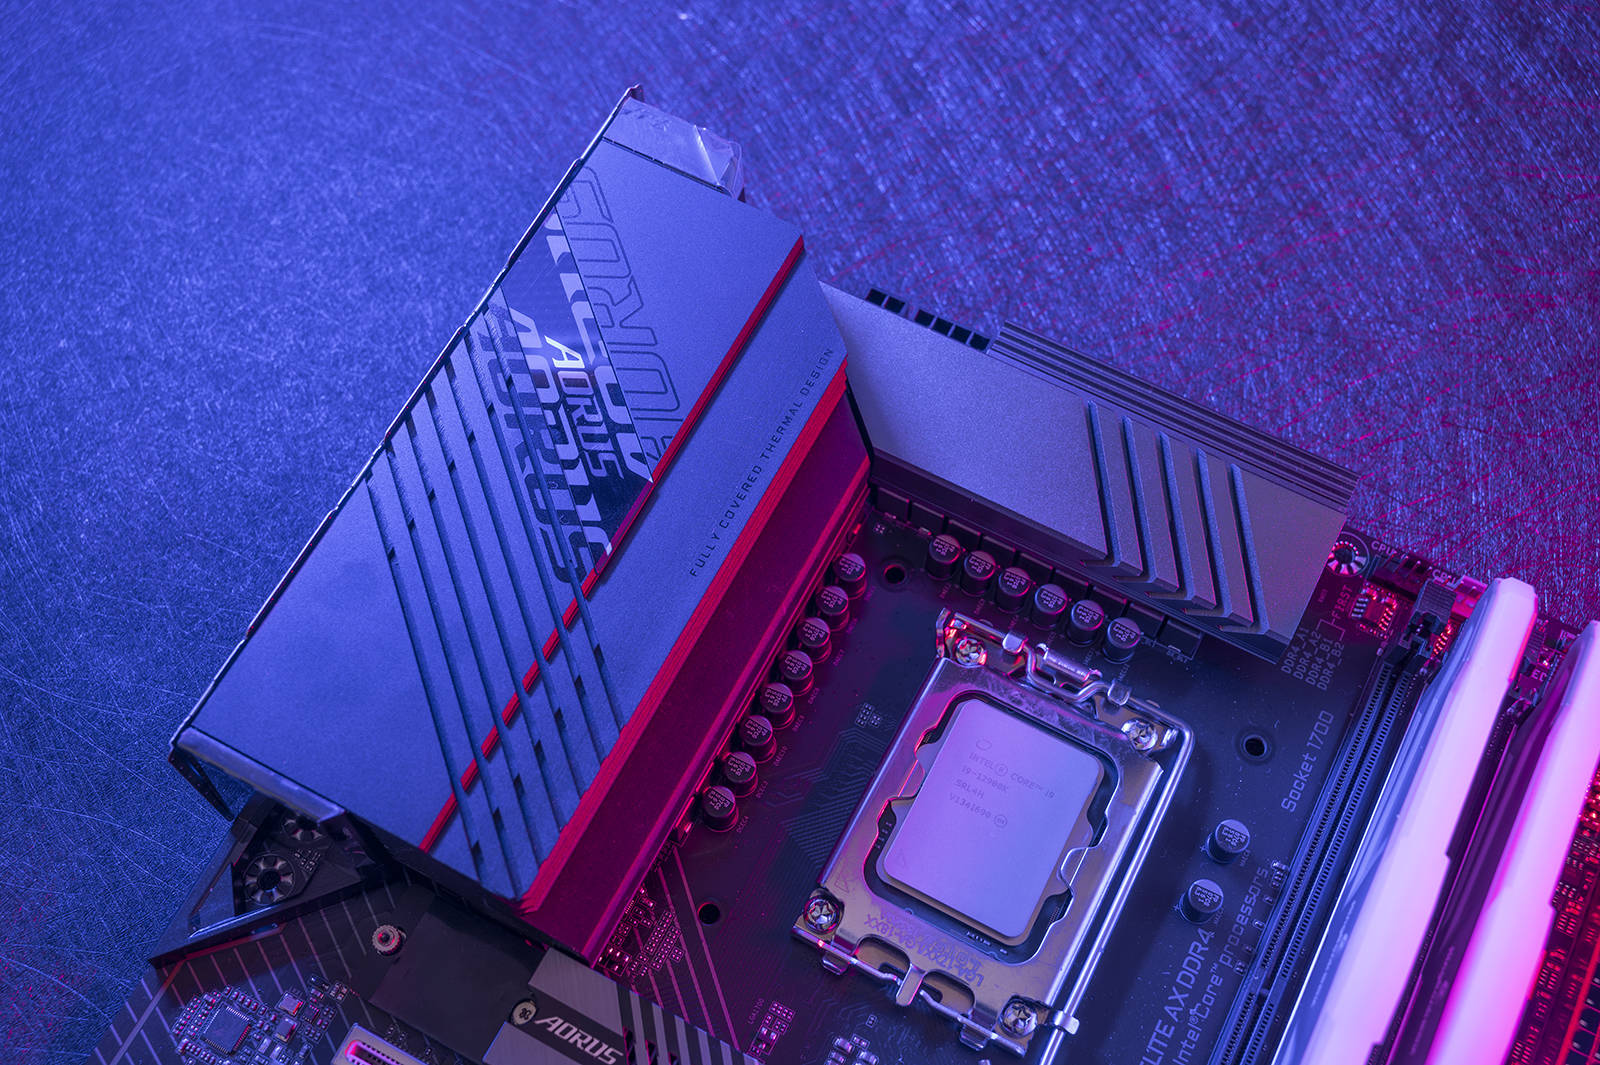 技嘉 B250M DDR4 2400 主板：电脑世界的耀眼明珠，性能与外观的完美结合